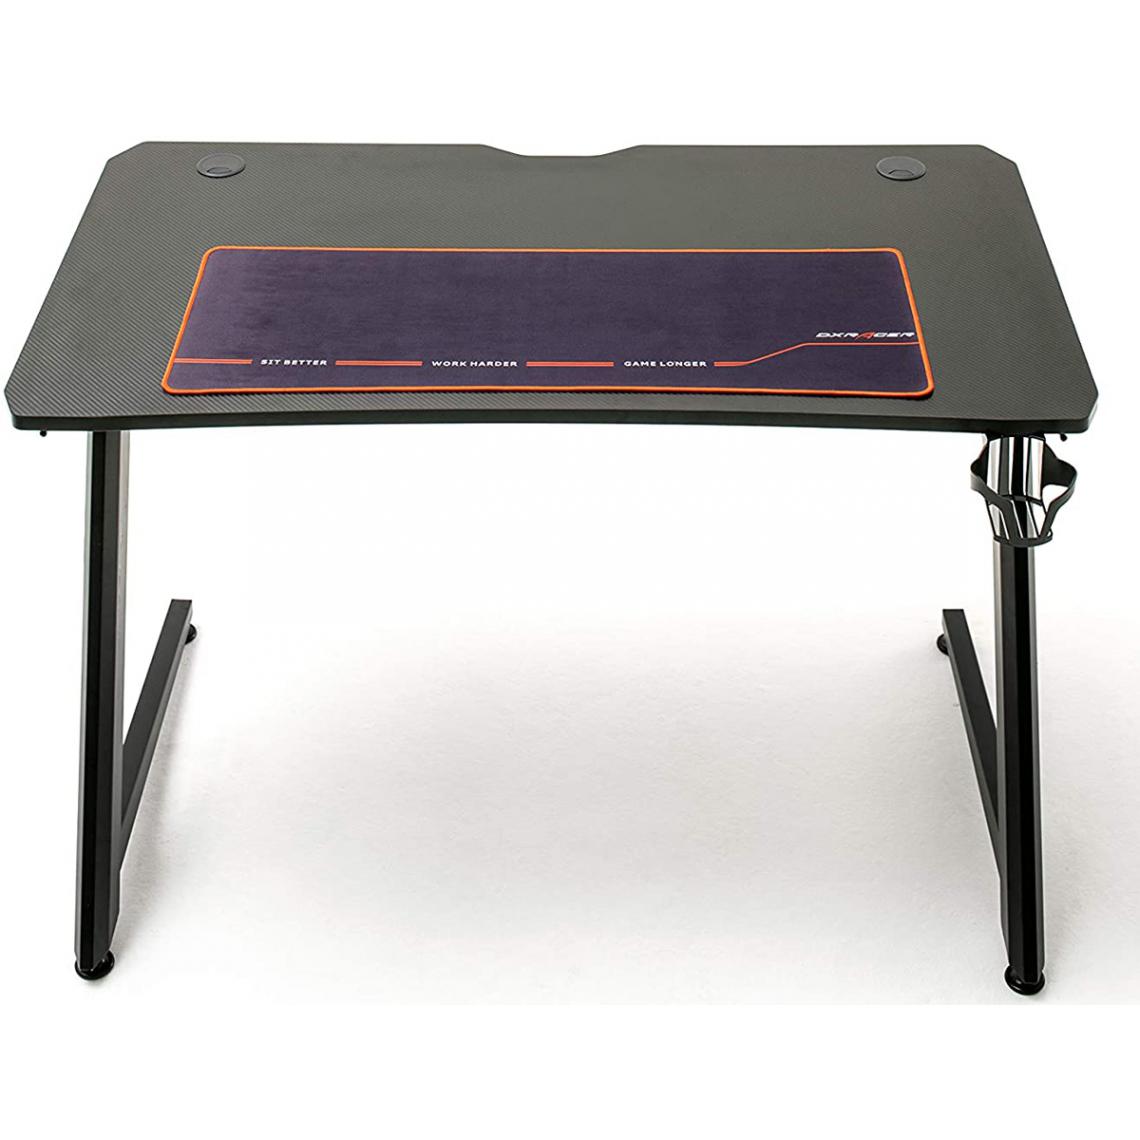 Pegane - Table de jeu / bureau de jeu en métal coloris noir - Longueur 111 x Hauteur 75 x Profondeur 60 cm - Bureau gamer